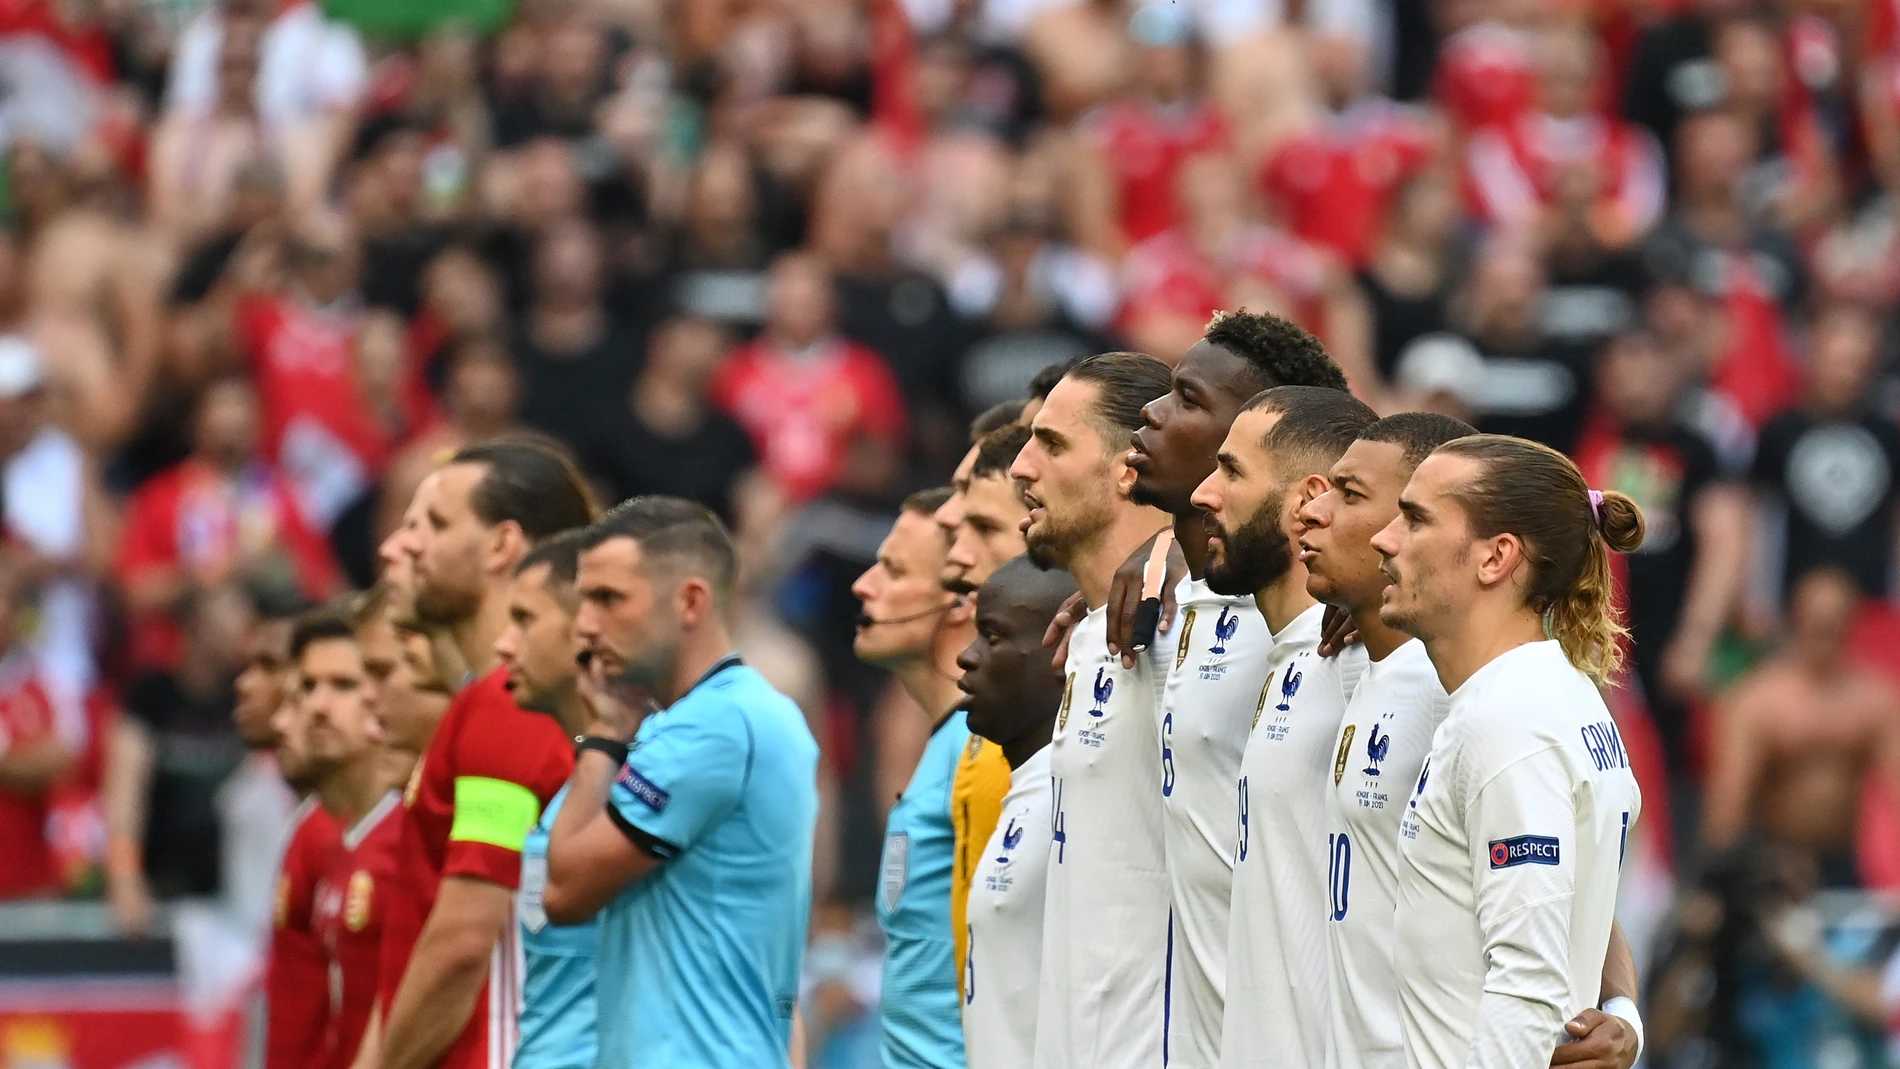 Los insultos racistas durante el Hungría-Francia, a examen por la UEFA